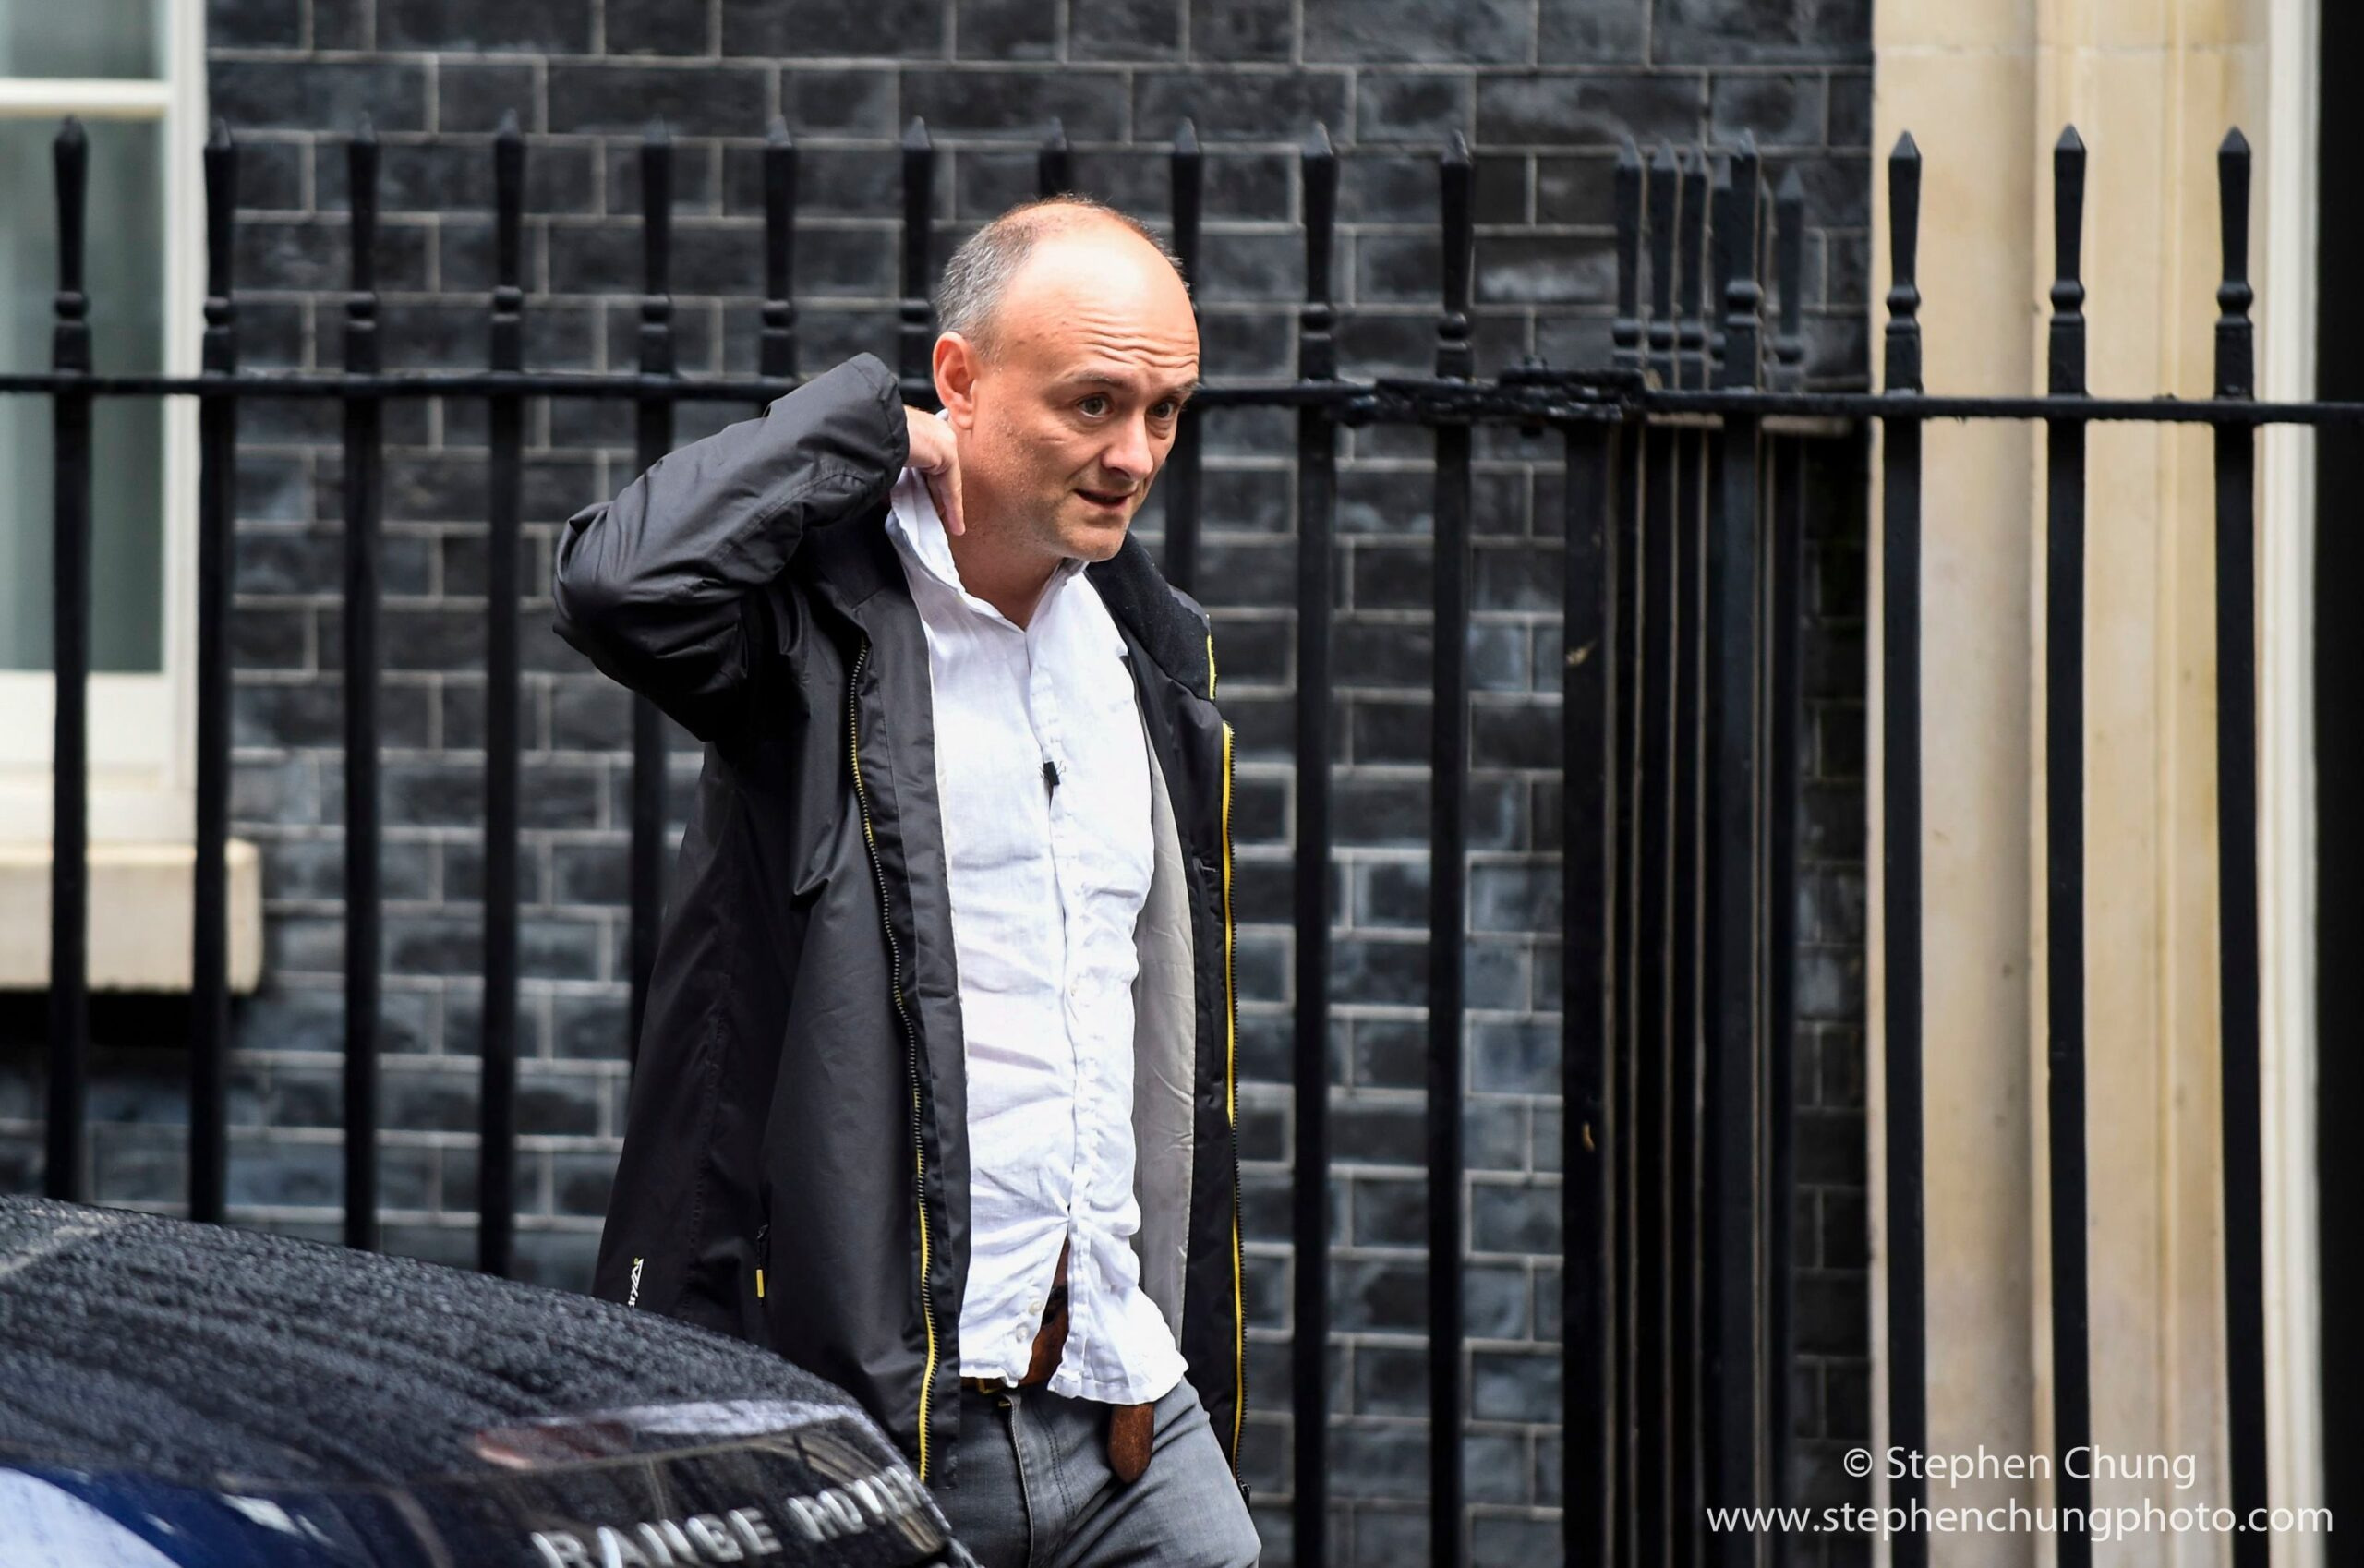 Dominic Cummings, zvláštní poradce premiéra Johnsona, míří do Downing Street č. 10. 26. září 2019.